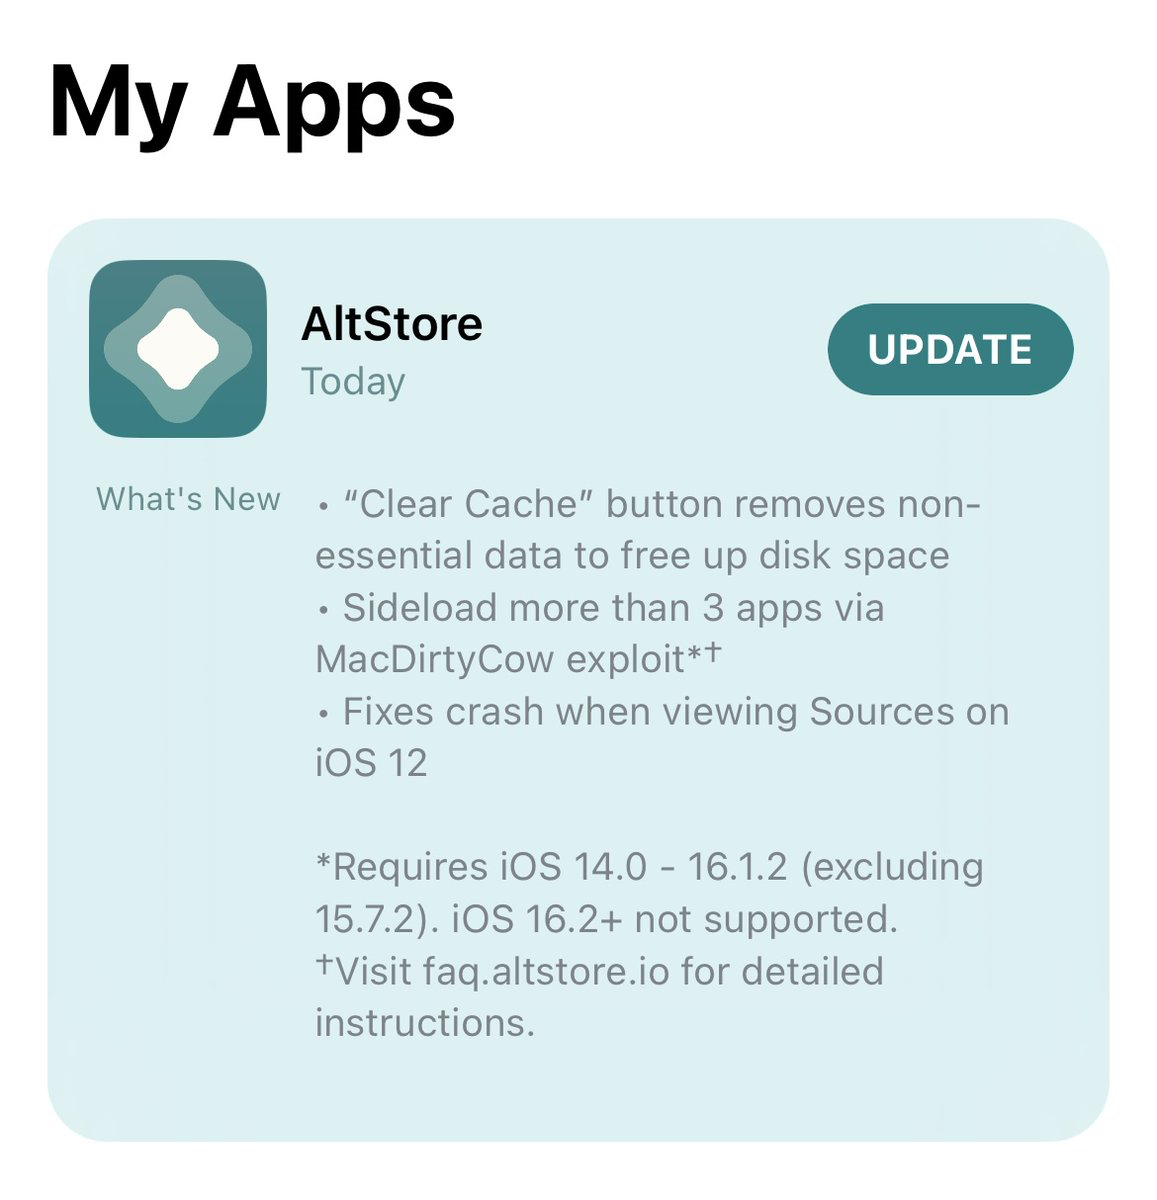 AltStore v1.6.1 update.